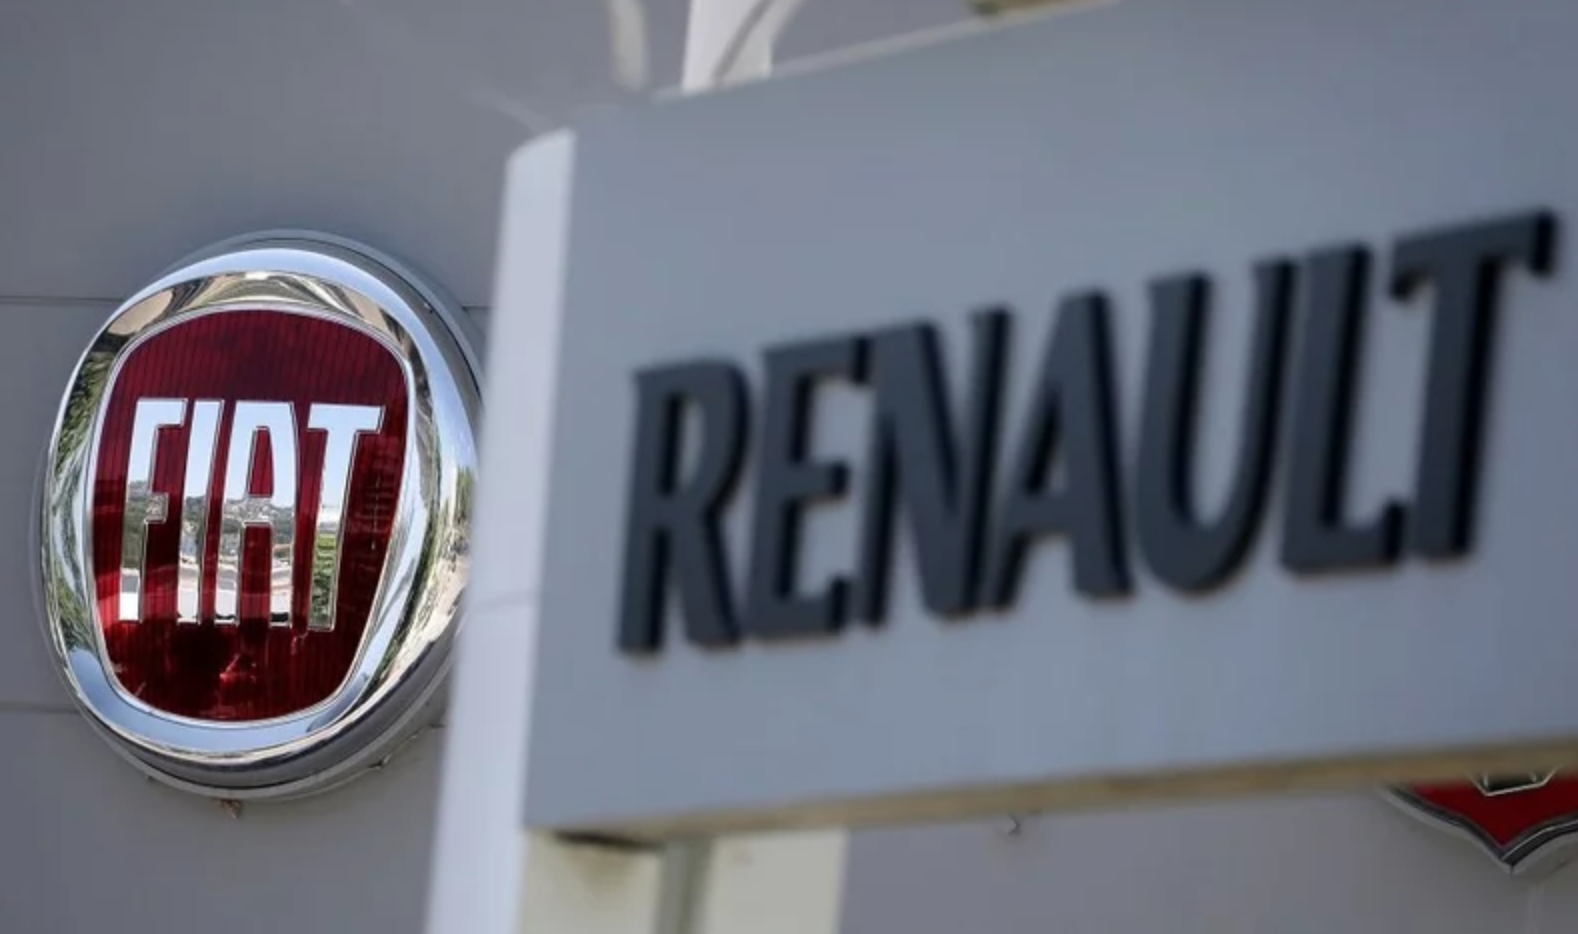 Renault Grubu’ndan da açıklama geldi: Hayal kırıklığı